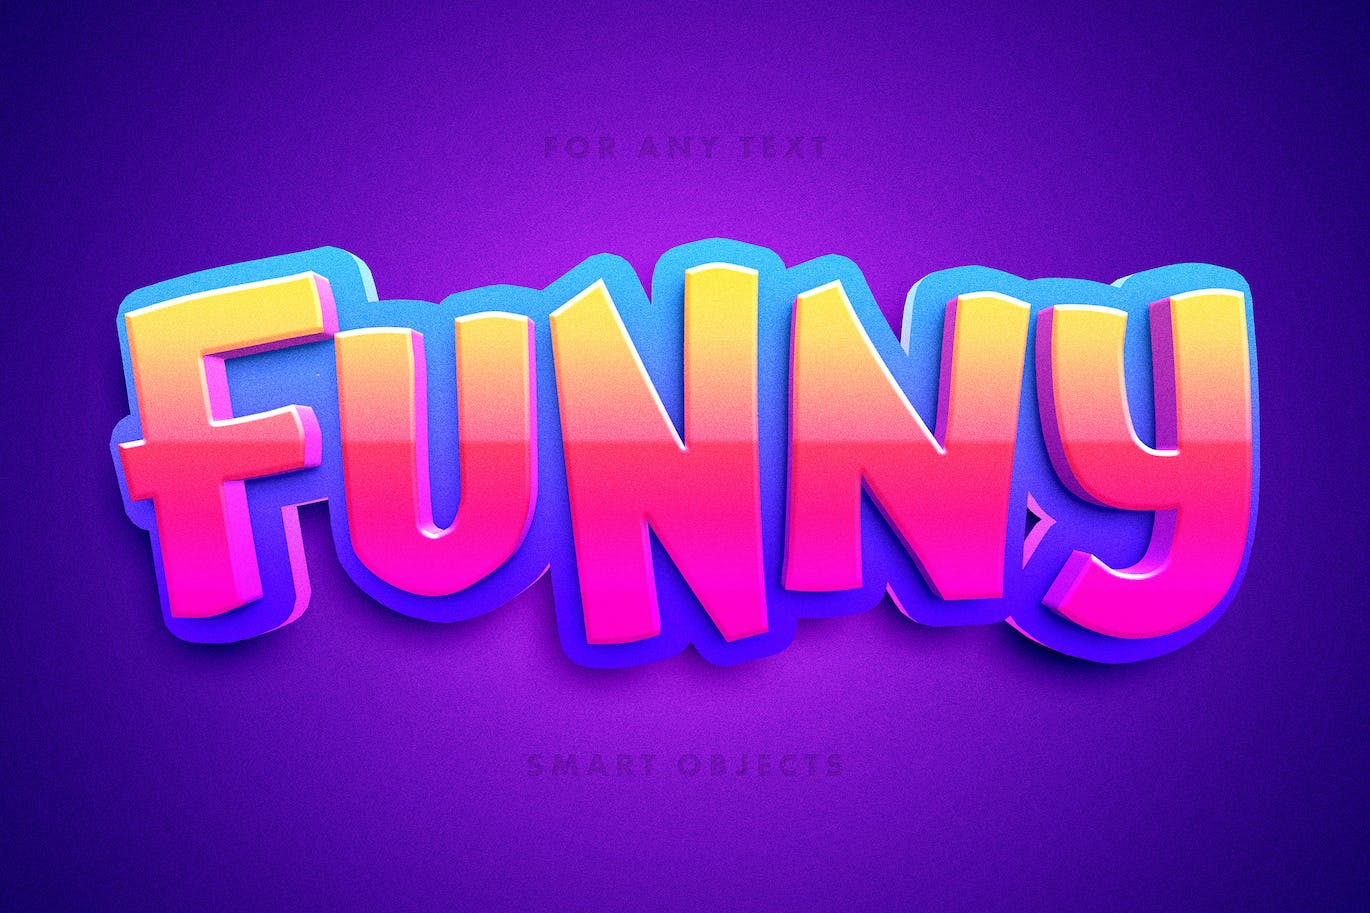 有趣的卡通3D文本效果 Funny Toon 3D Text Effect 设计素材 第1张